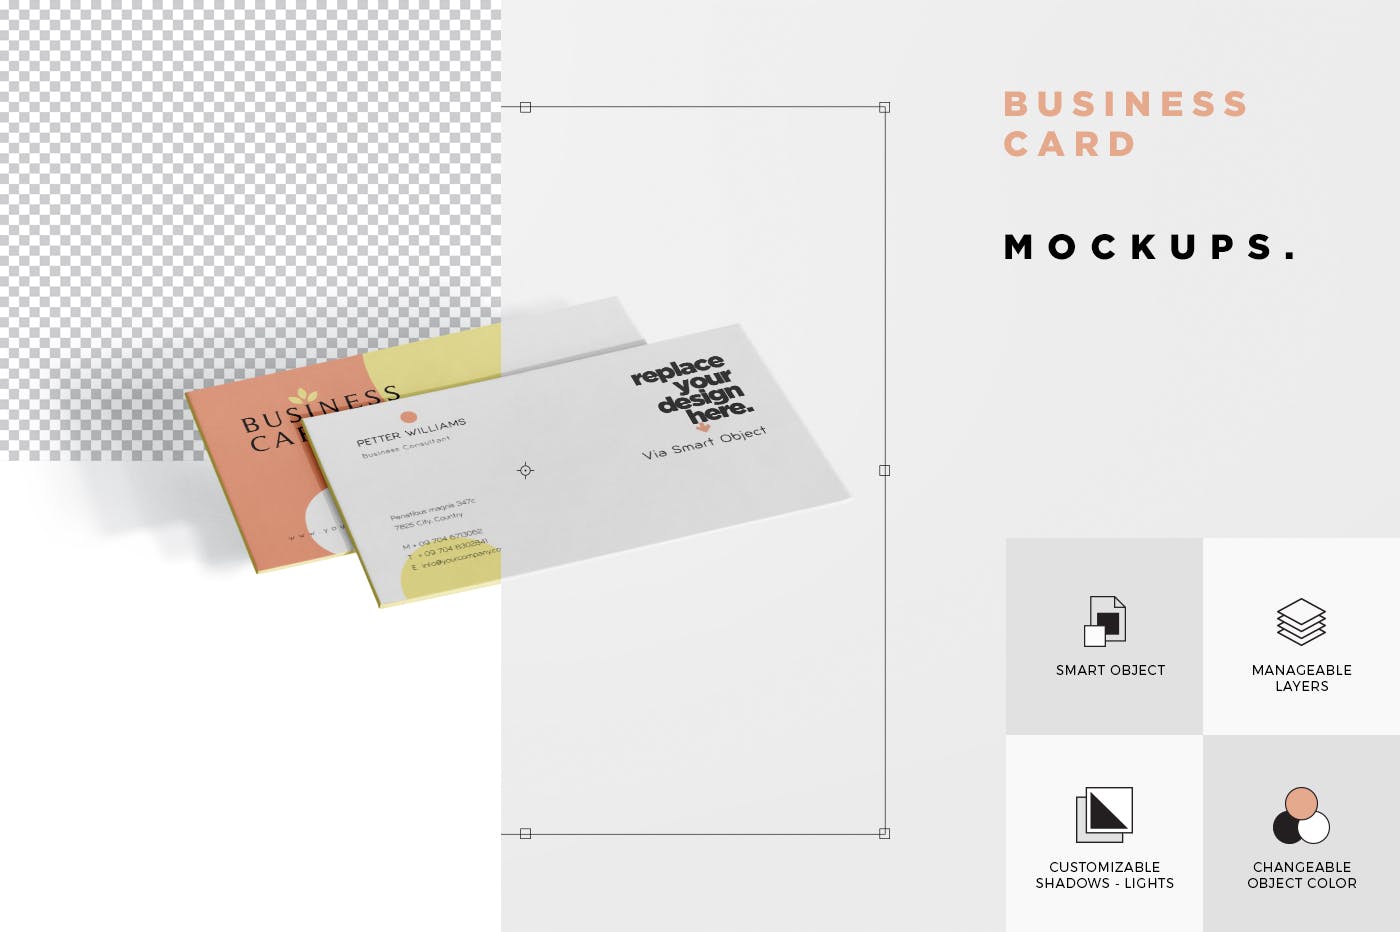 创意企业名片设计阴影效果图第一素材精选 Business Card Mock-Ups插图(5)